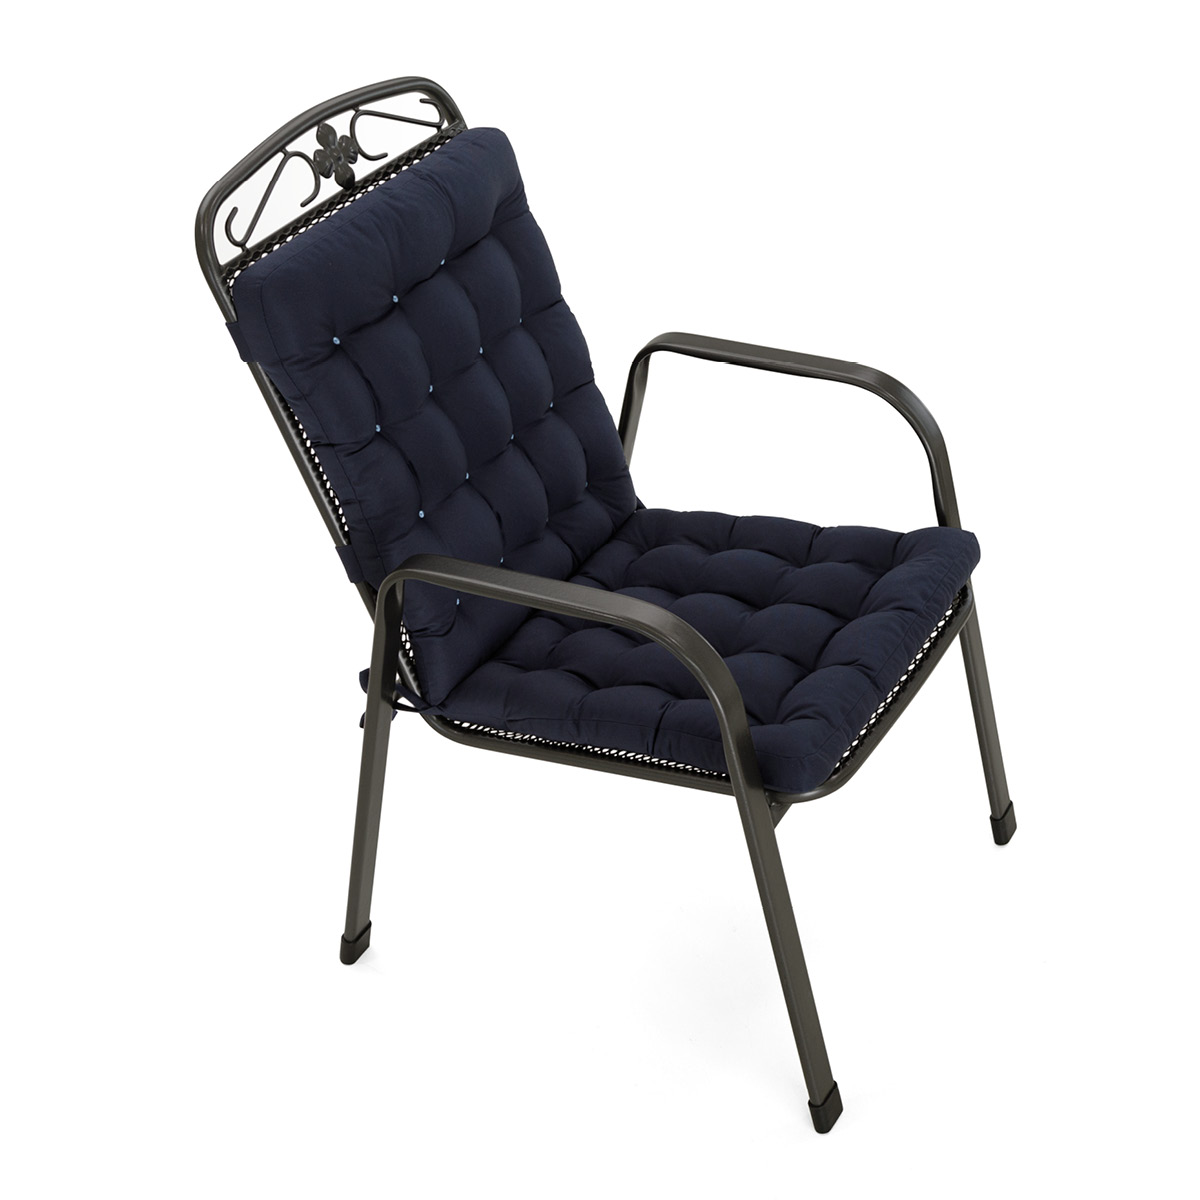 Sitzkissen mit Rückenlehne dunkelblau | dicke Polsterung mit Schleifen und Bänder zur Befestigung an Gartenstuhl / Stapelstuhl | HAVE A SEAT Living 